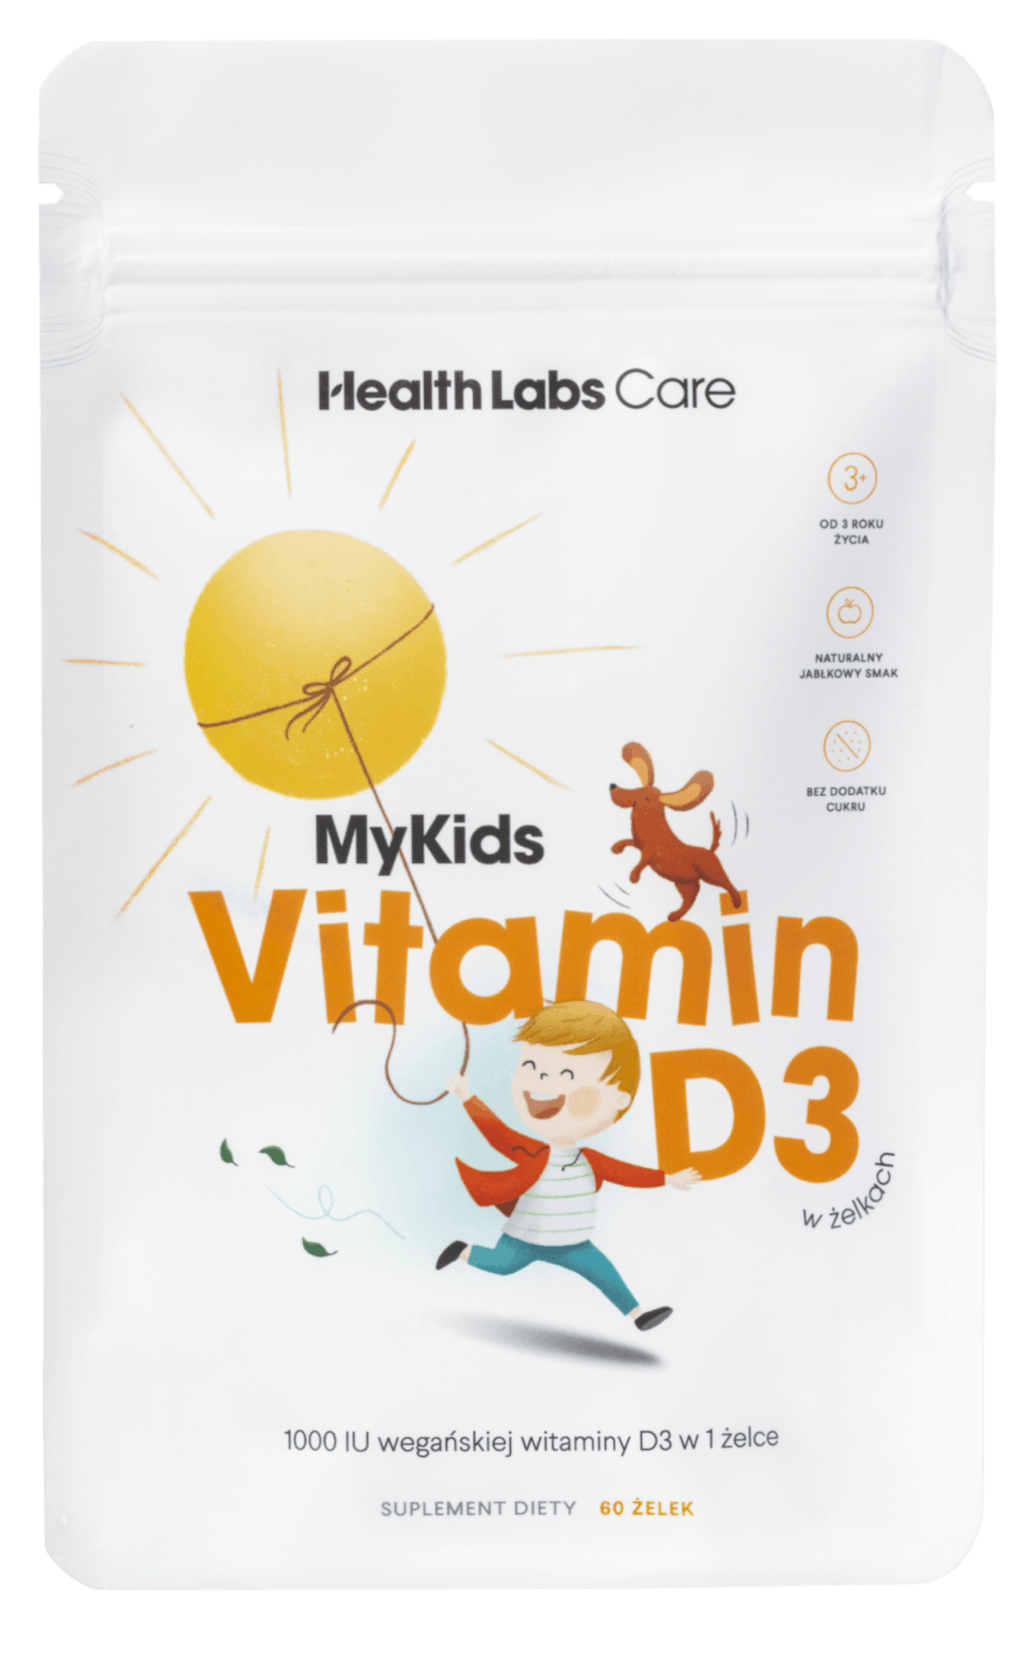 MyKids Vitamin D3 w żelkach